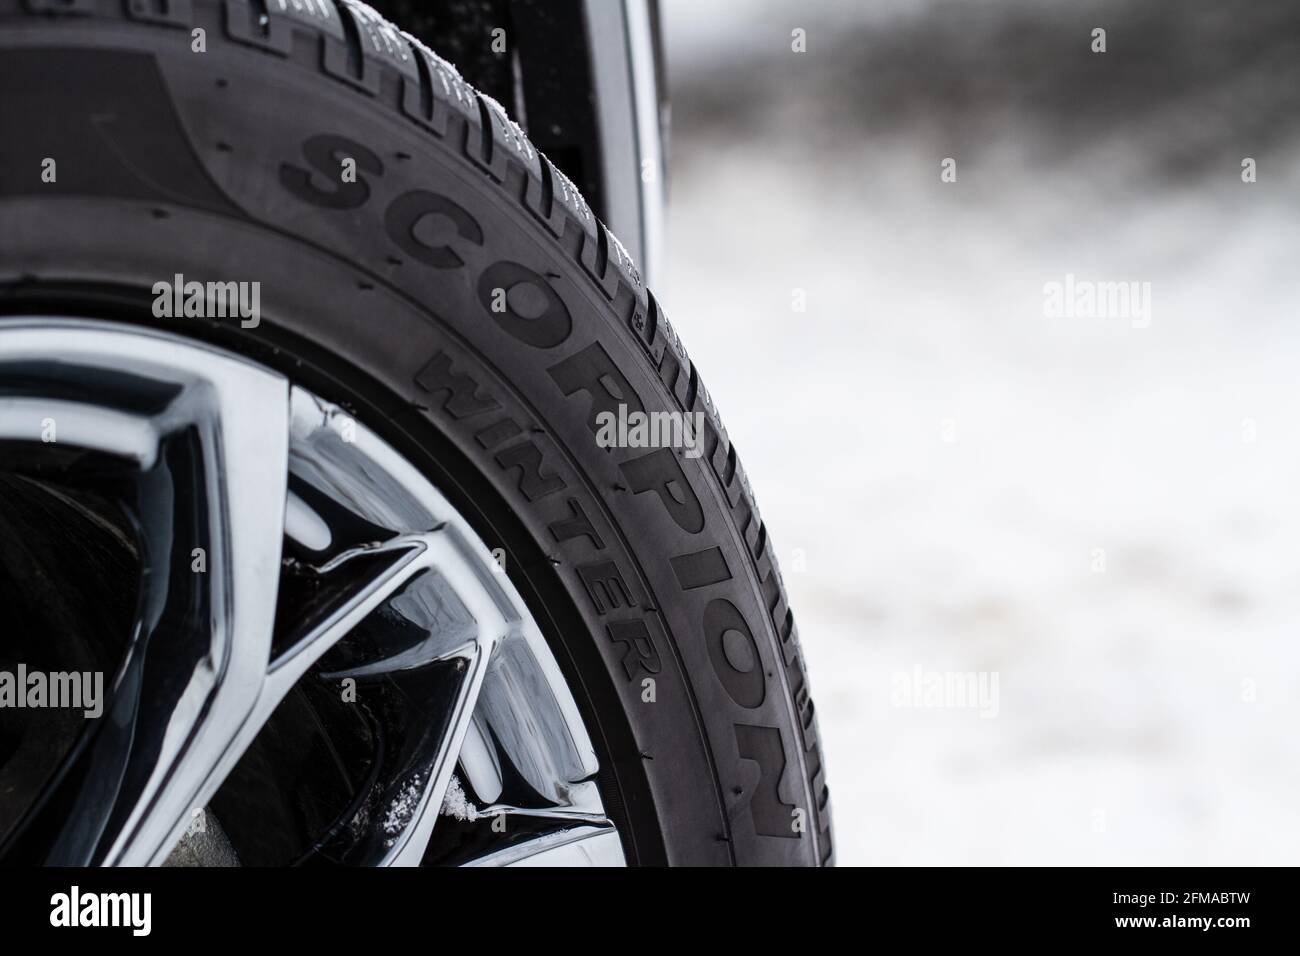 MOSCOU, RUSSIE - 23 FÉVRIER 2021, vue rapprochée de la roue Pirelli Tires.  Vue rapprochée du logo du pneu Pirelli Scorpion. Pneus d'hiver Photo Stock  - Alamy